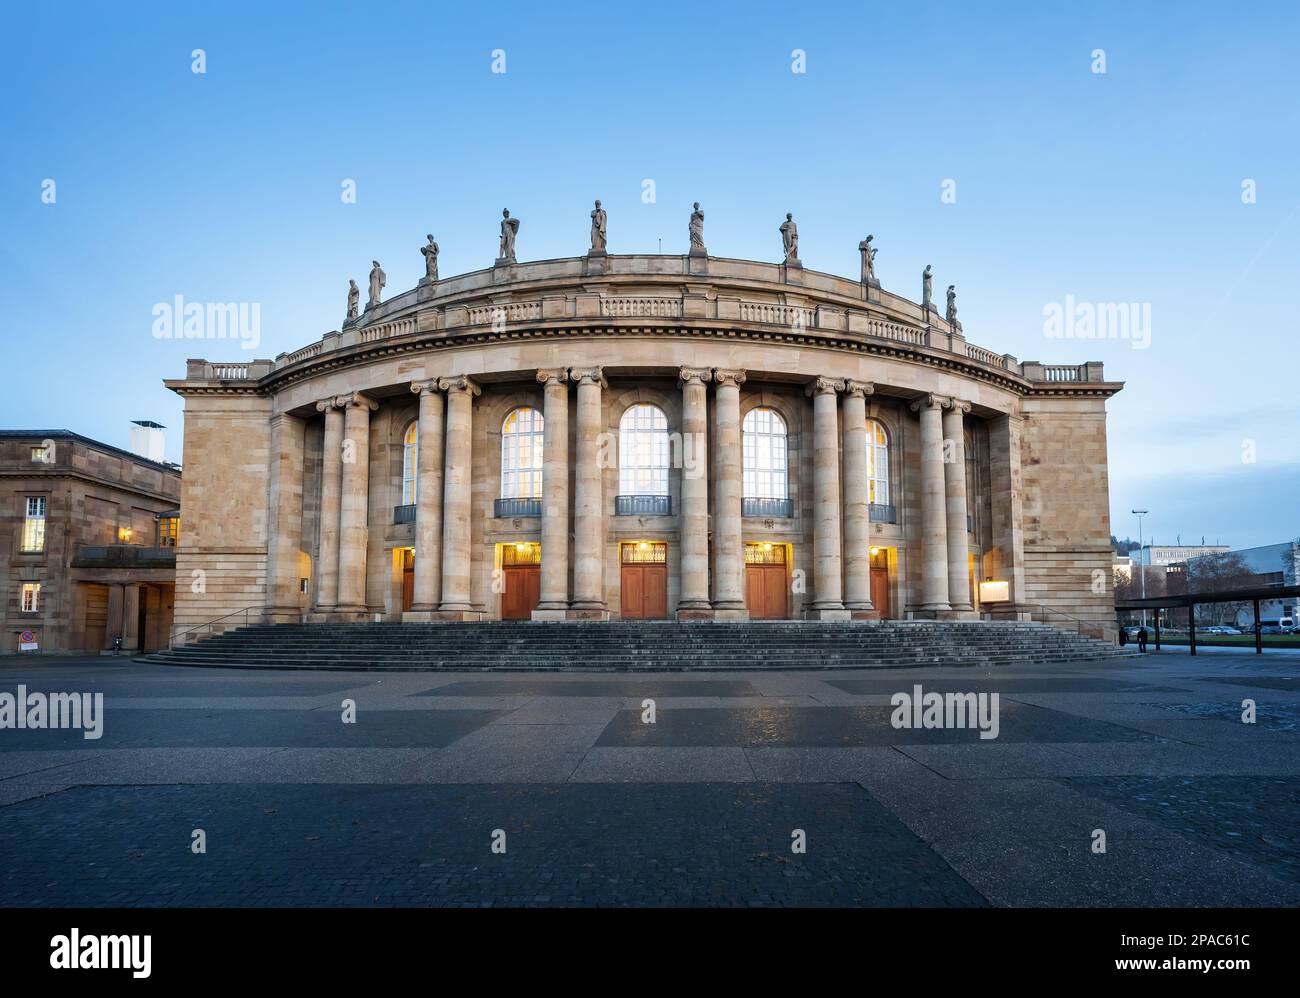 Stuttgart Opera House (Staatstheater) Facade - Stuttgart, Germany Stock Photo